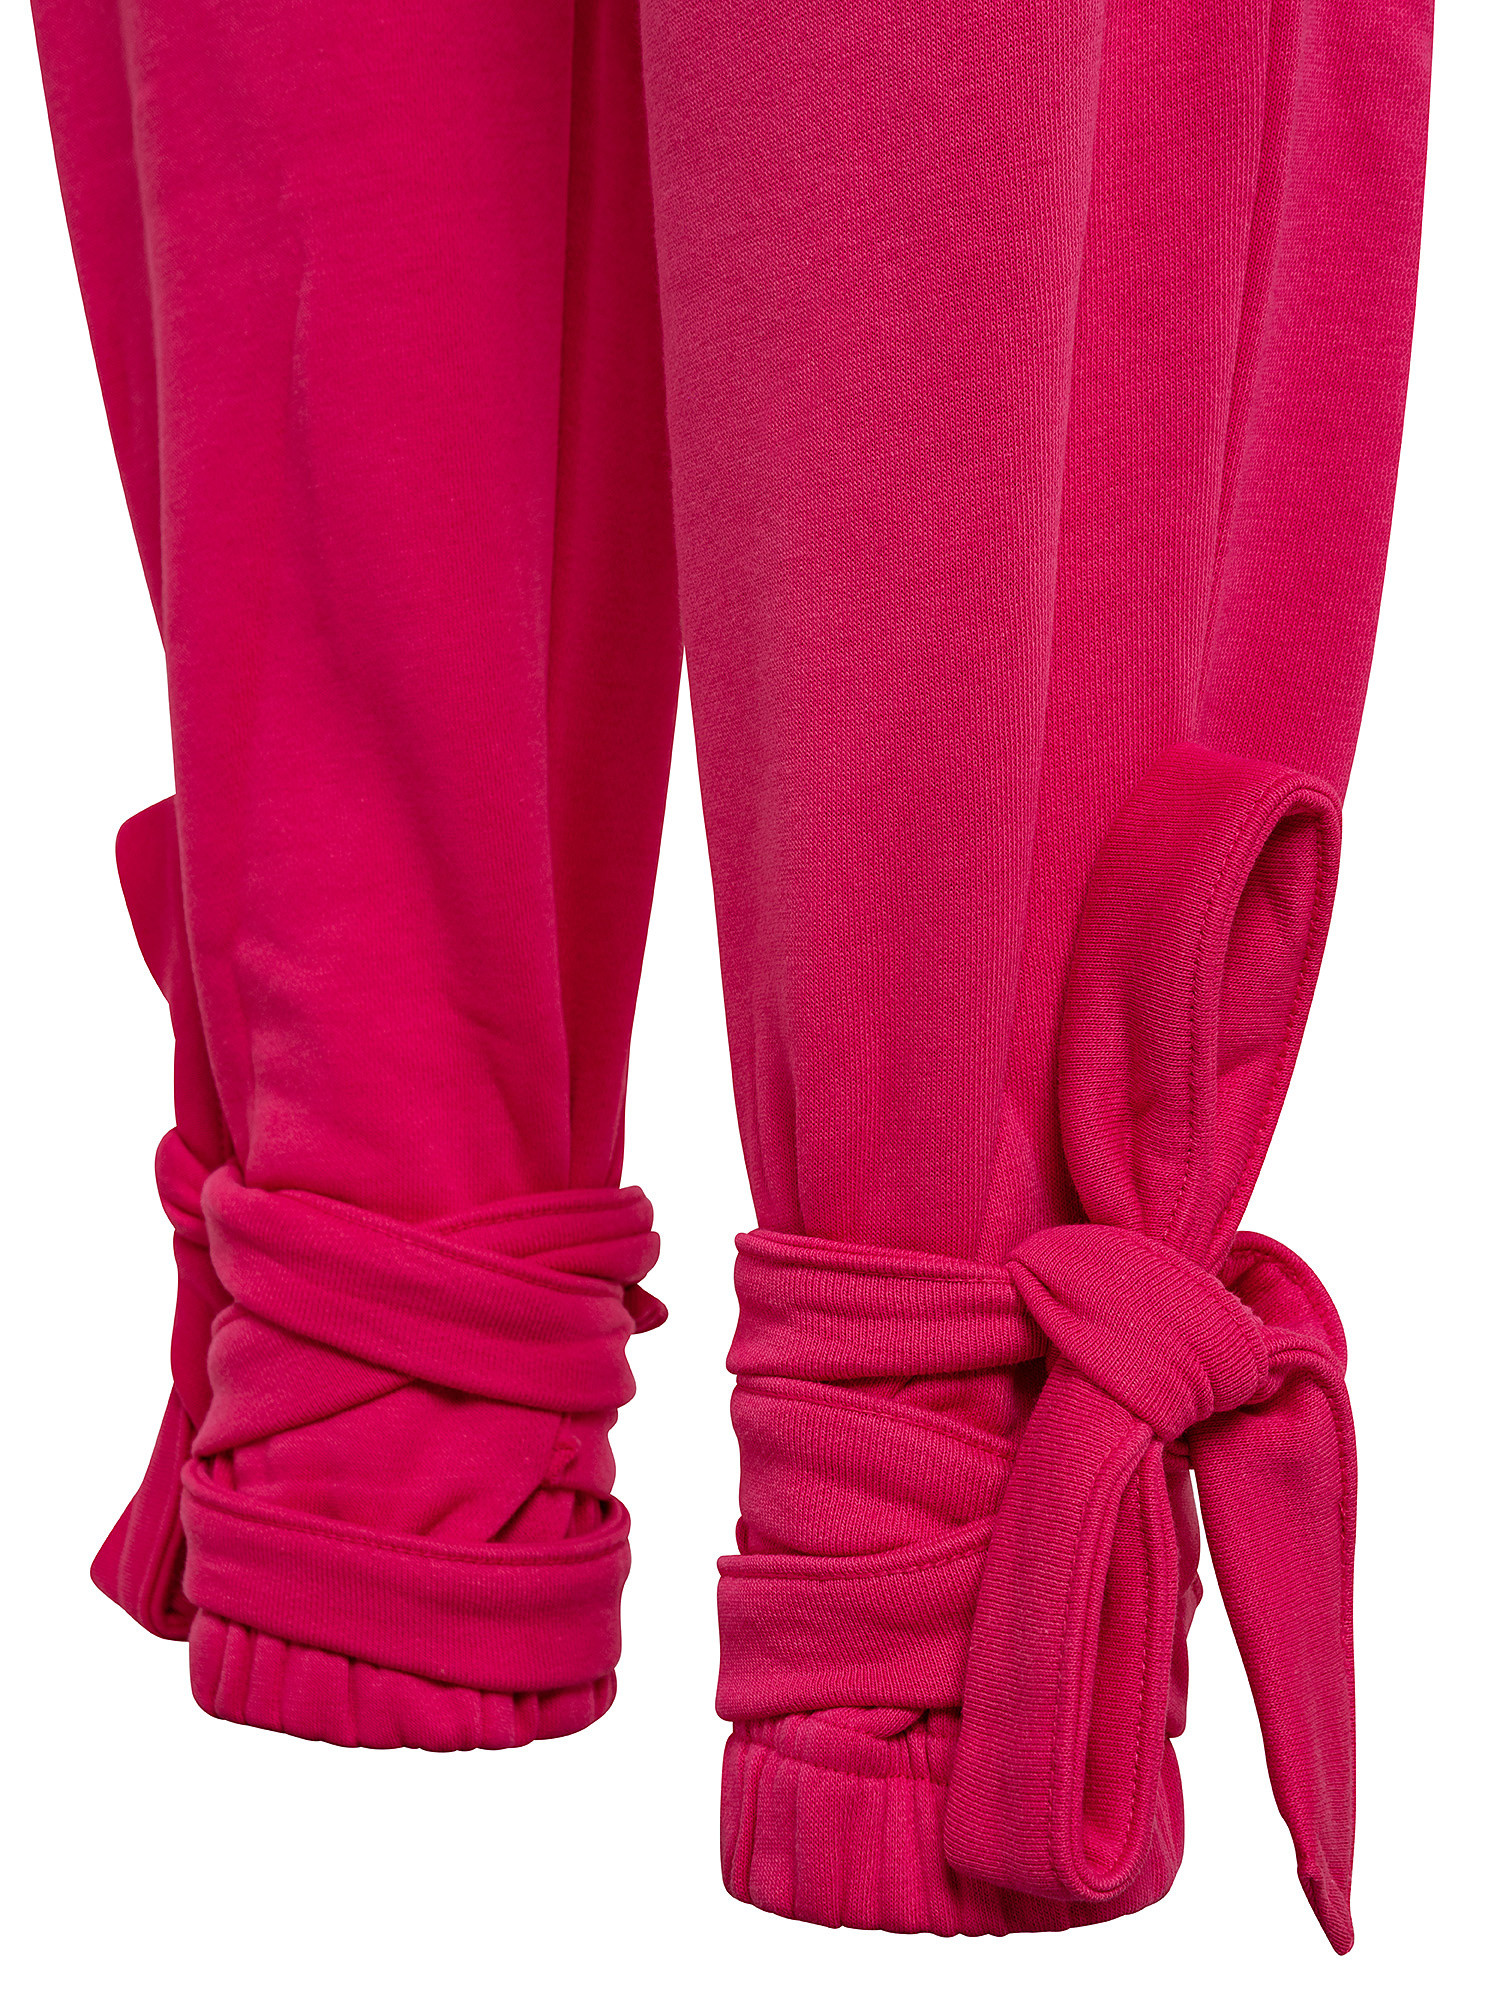 Pantaloni Cardi B in maglia, Rosa fuxia, large image number 2